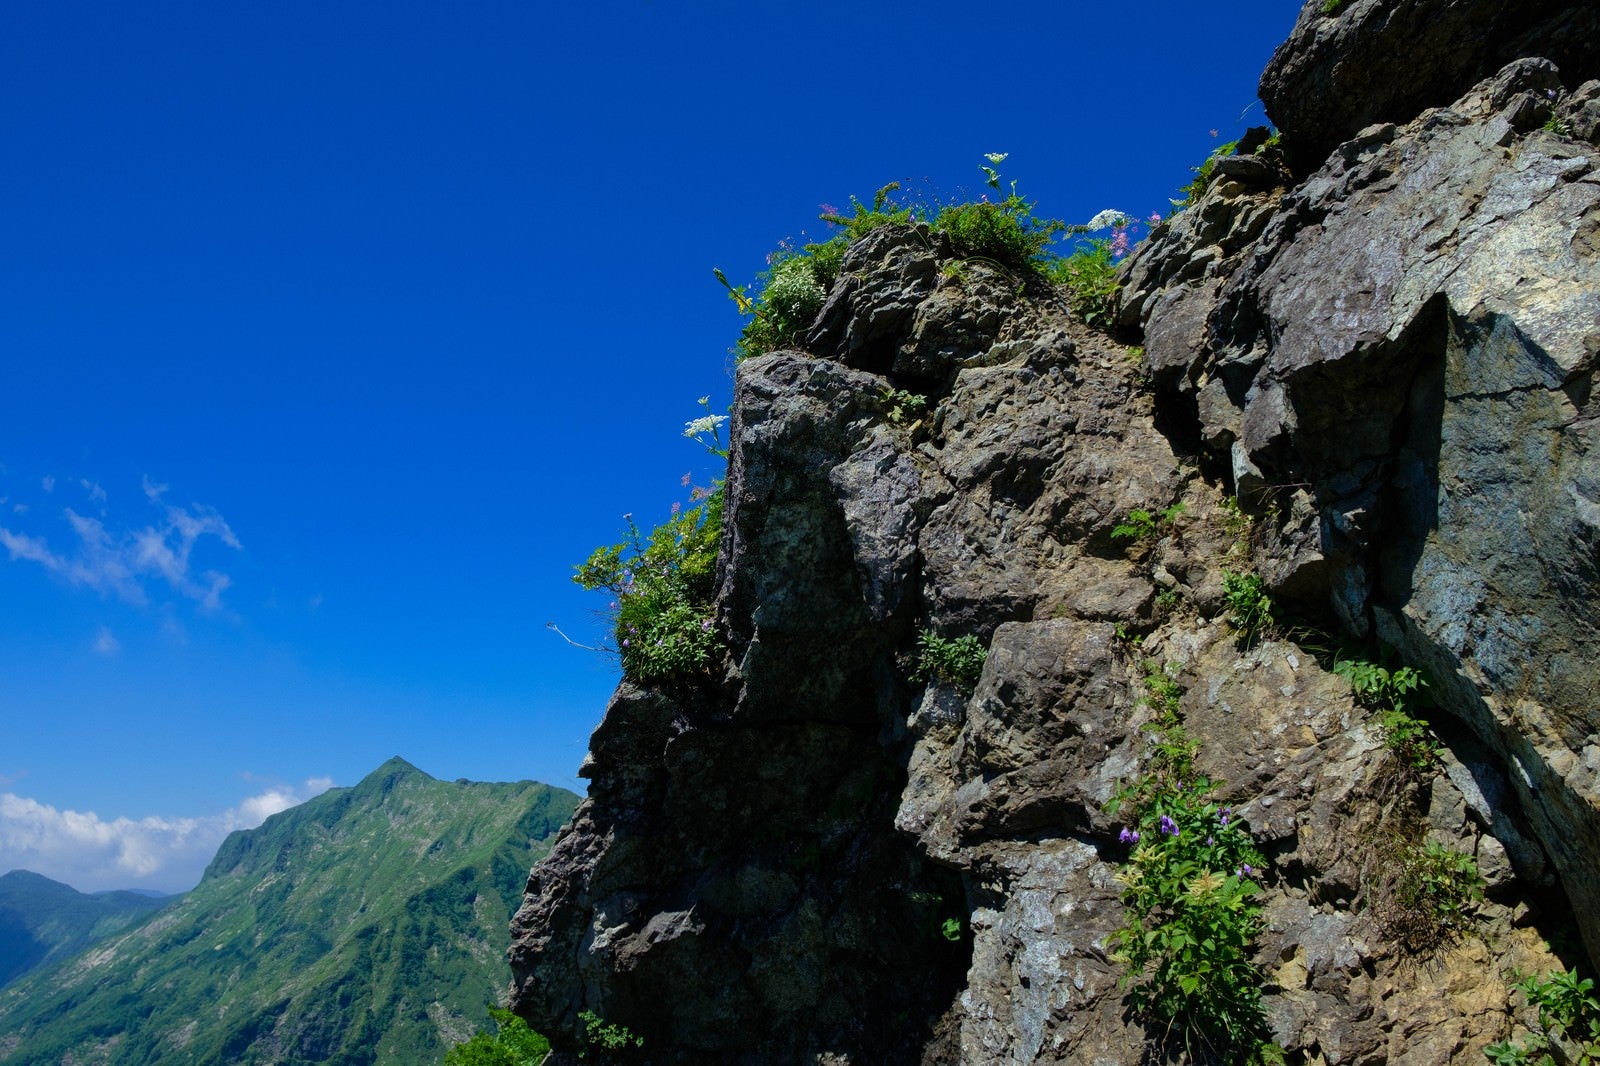 「青空と岩肌に咲く高山植物」の写真